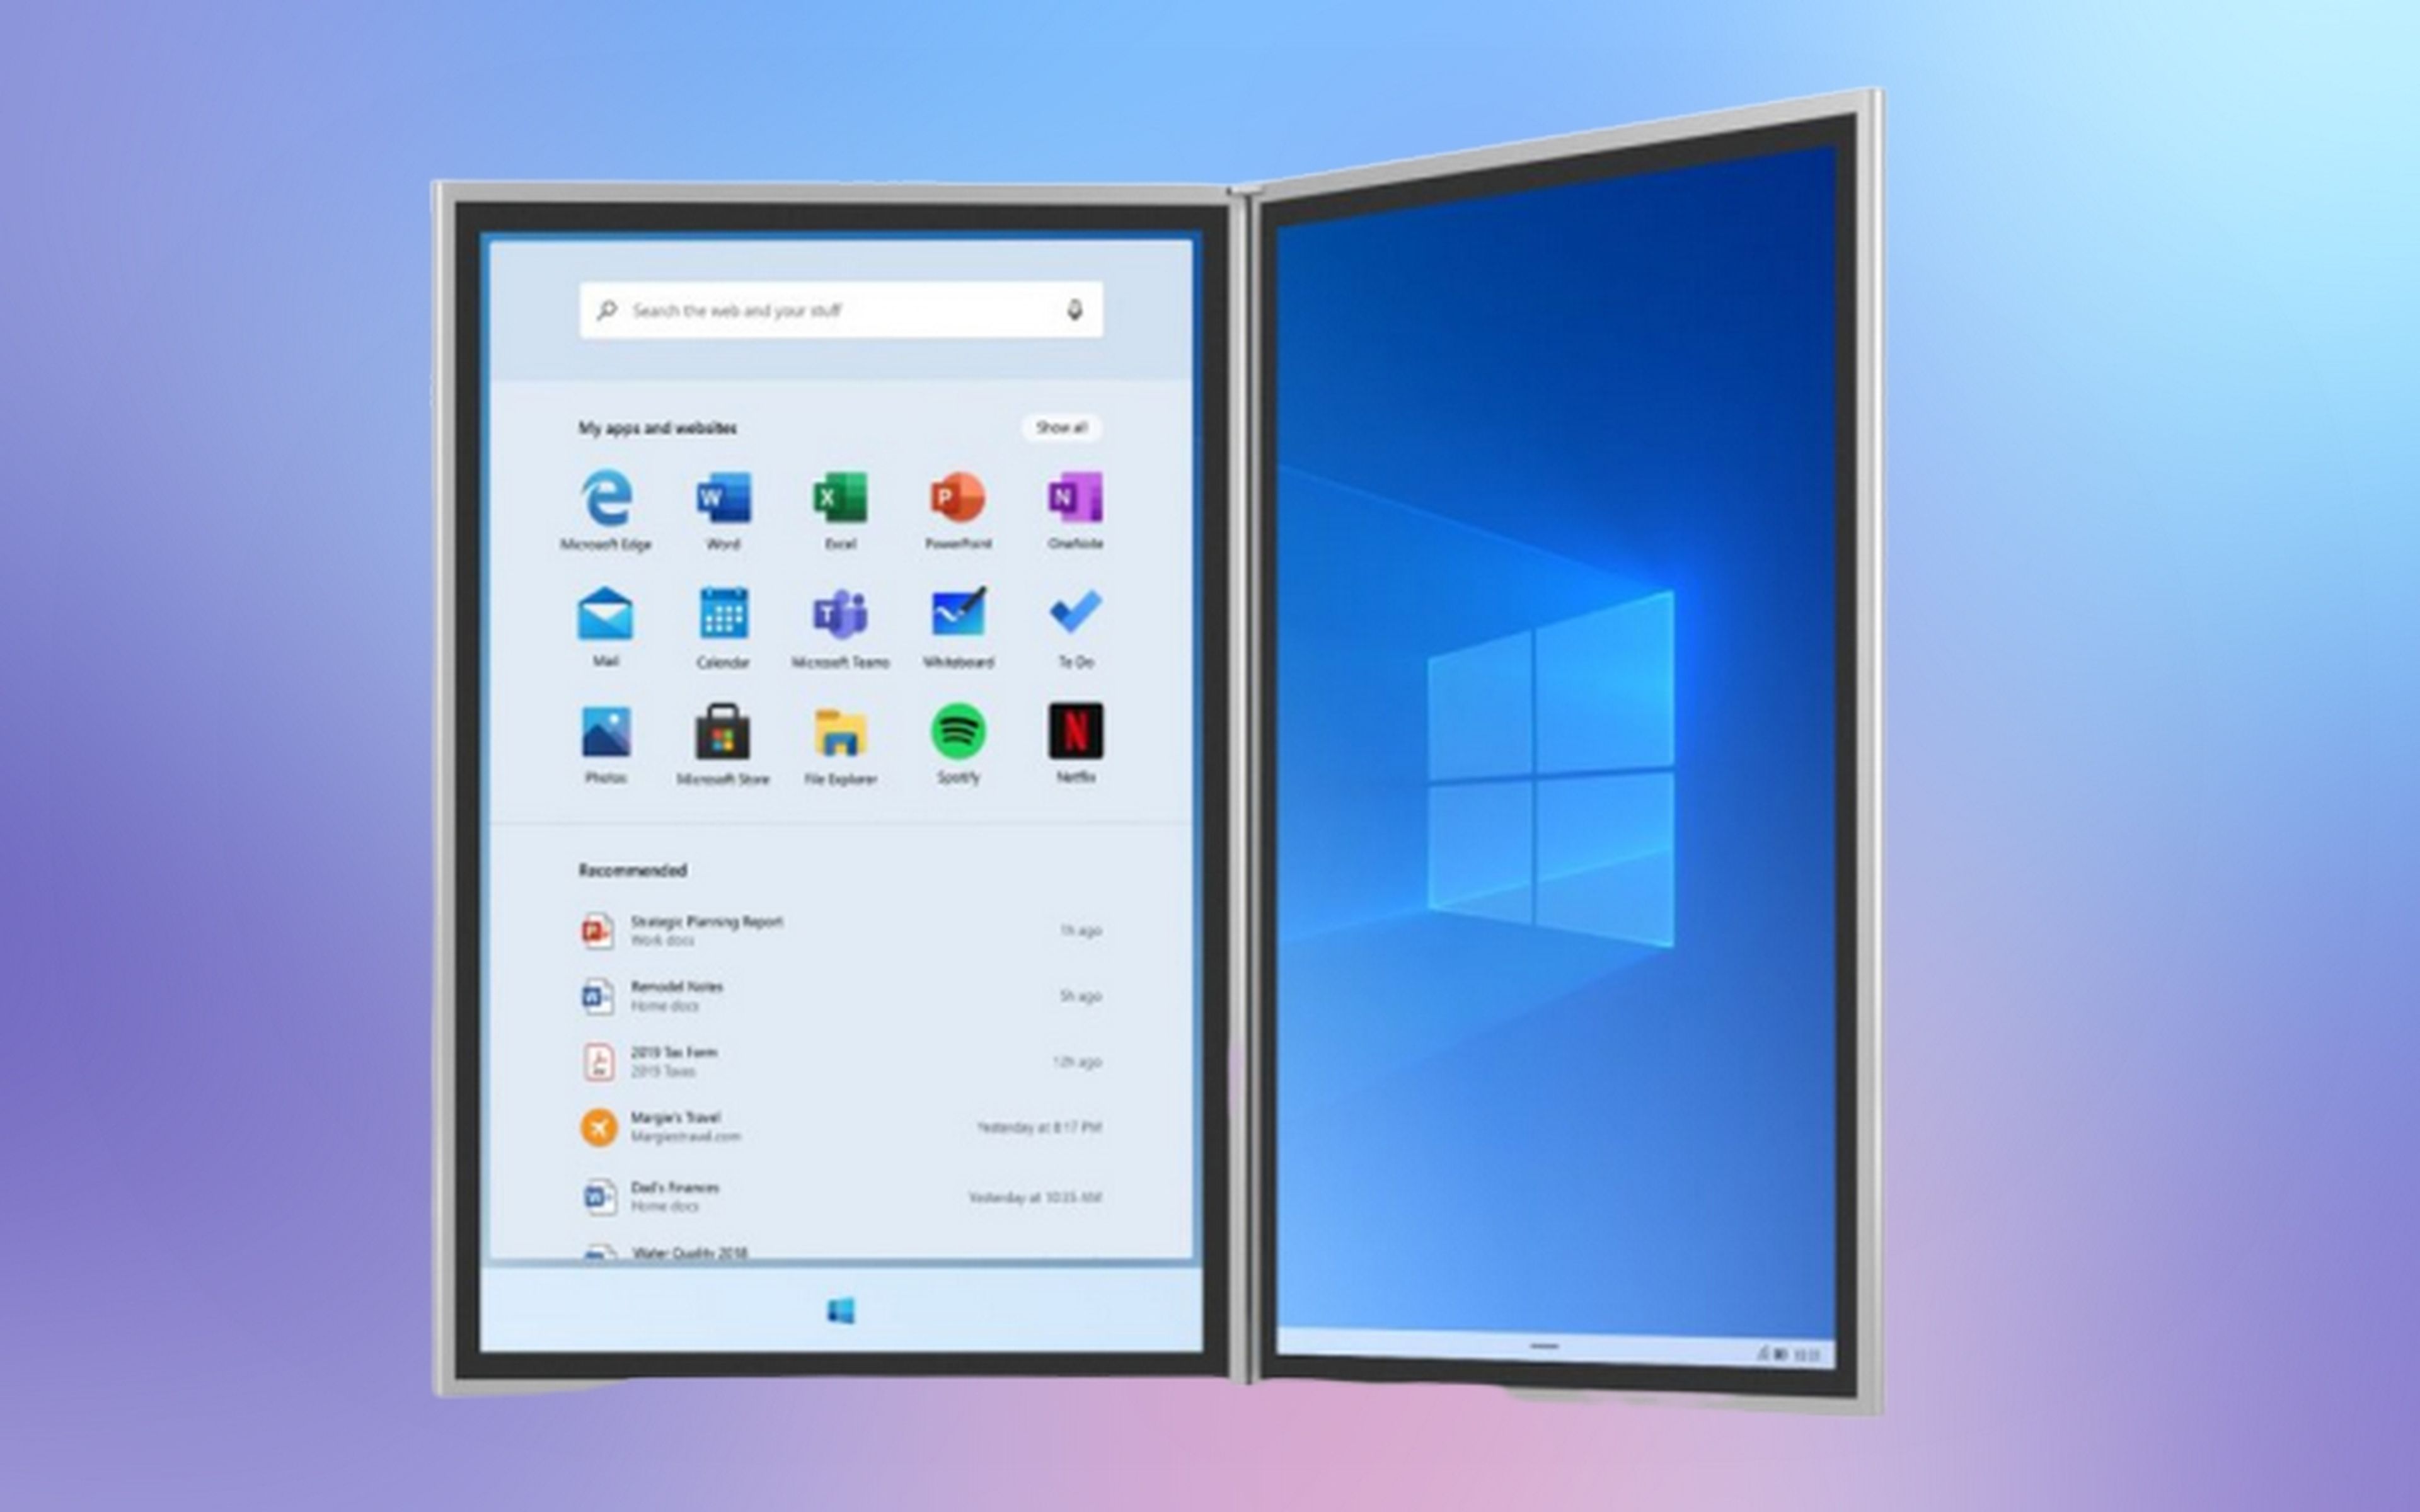 Ya puedes probar Windows 10X ahora mismo con el emulador oficial de Microsoft